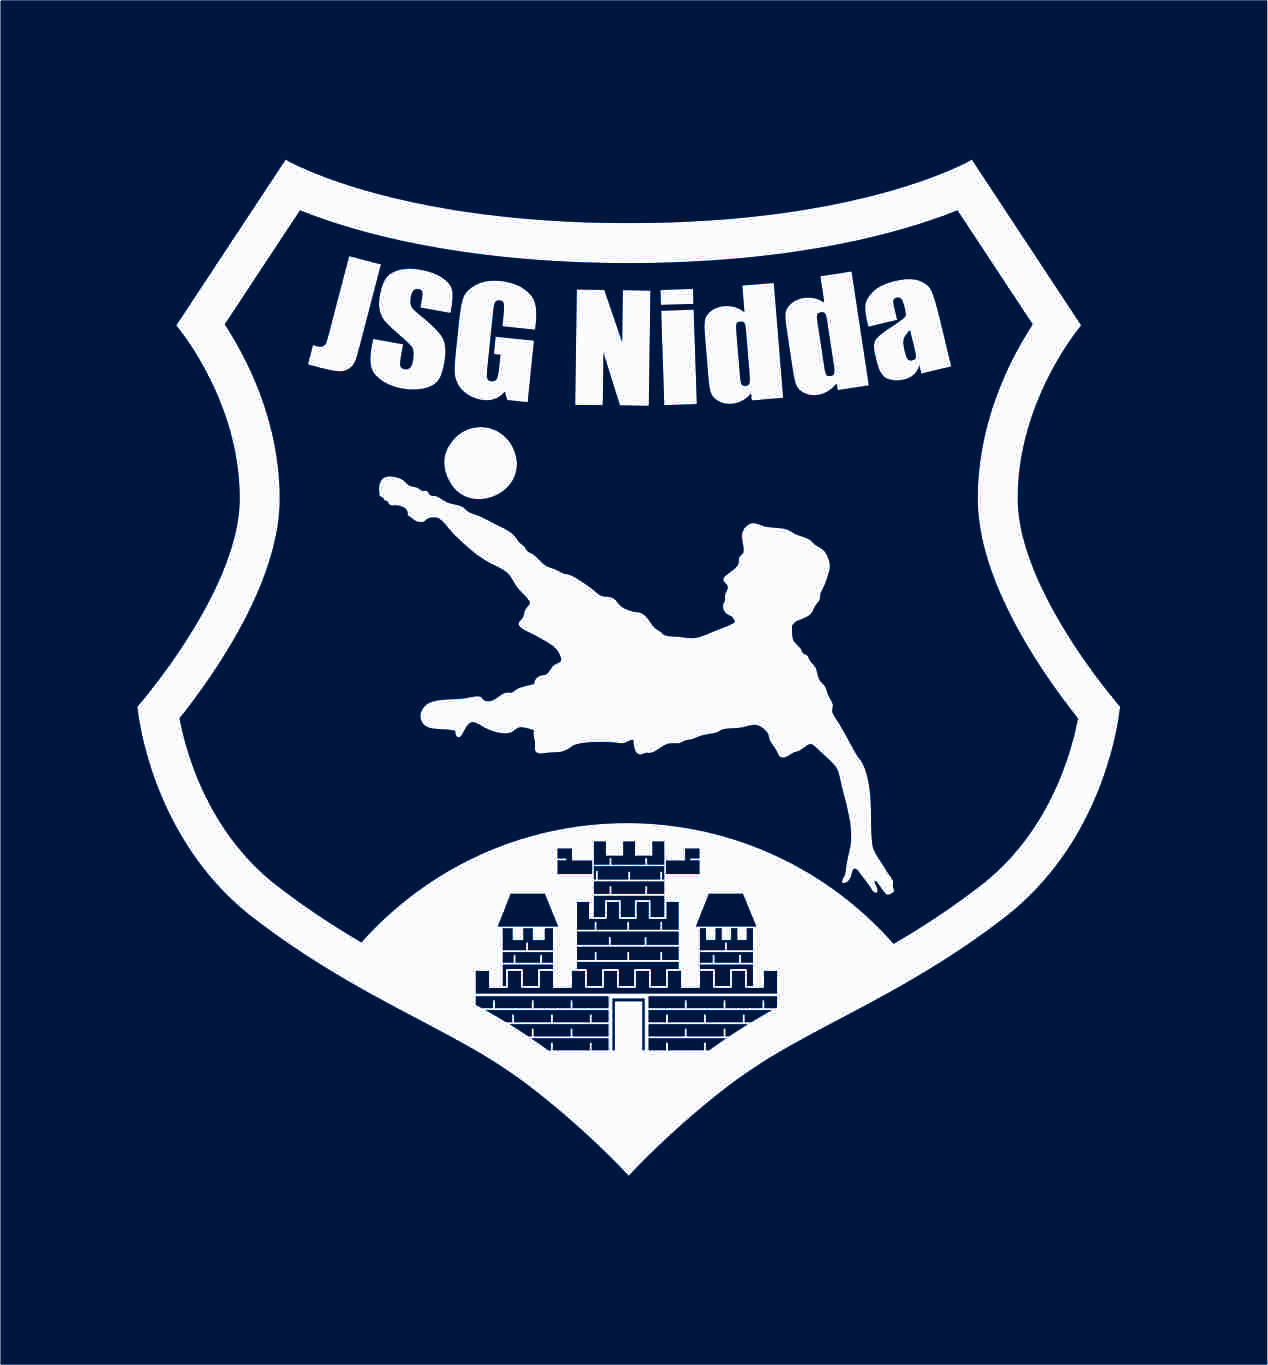 JSG Nidda Logo